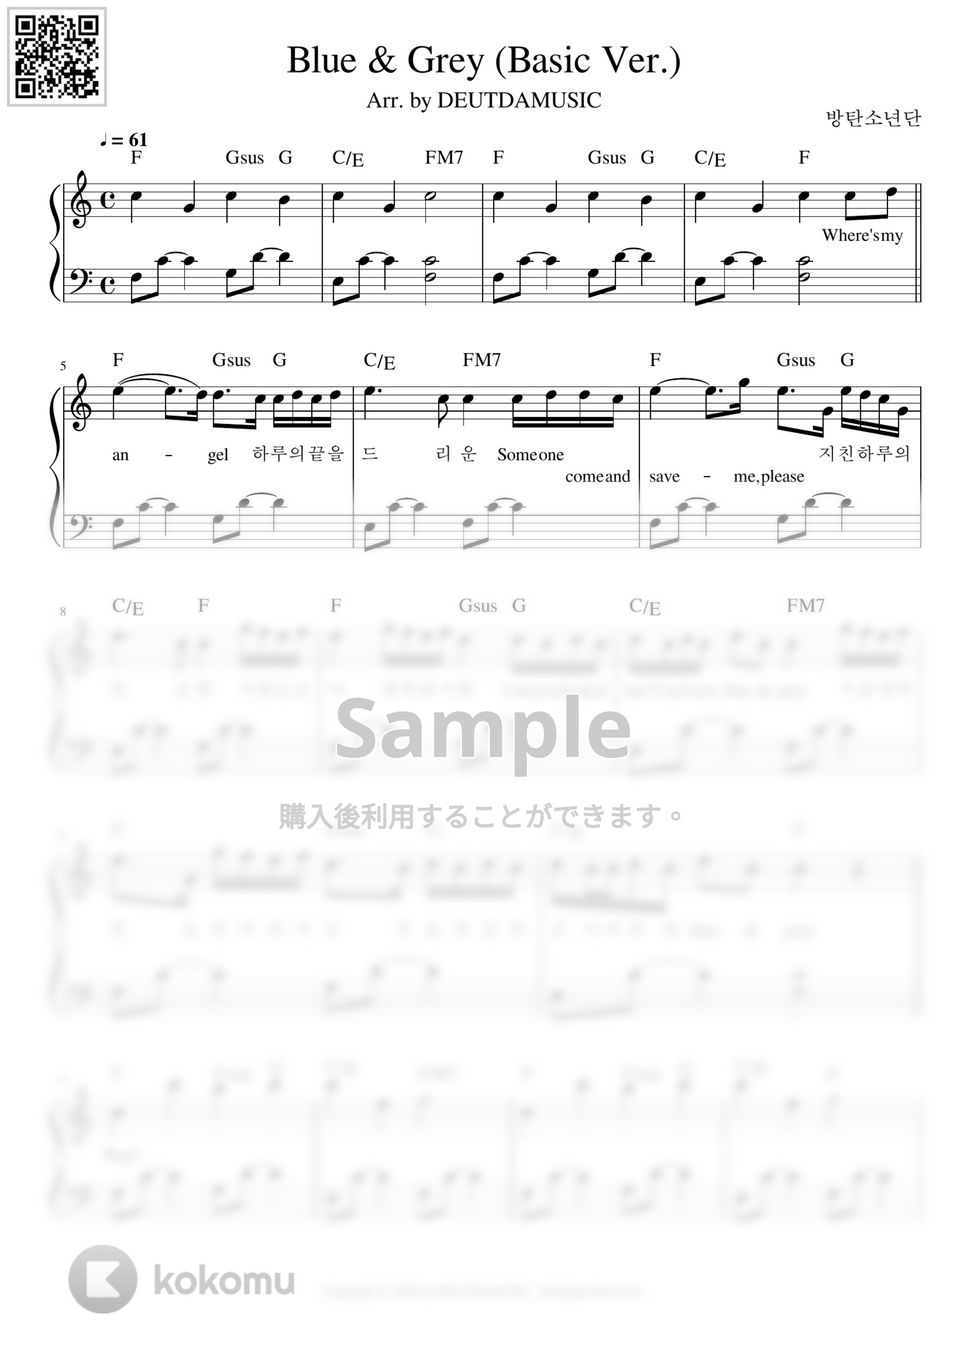 防弾少年団(BTS) - Blue & Grey (初級バージョン) by DEUTDAMUSIC